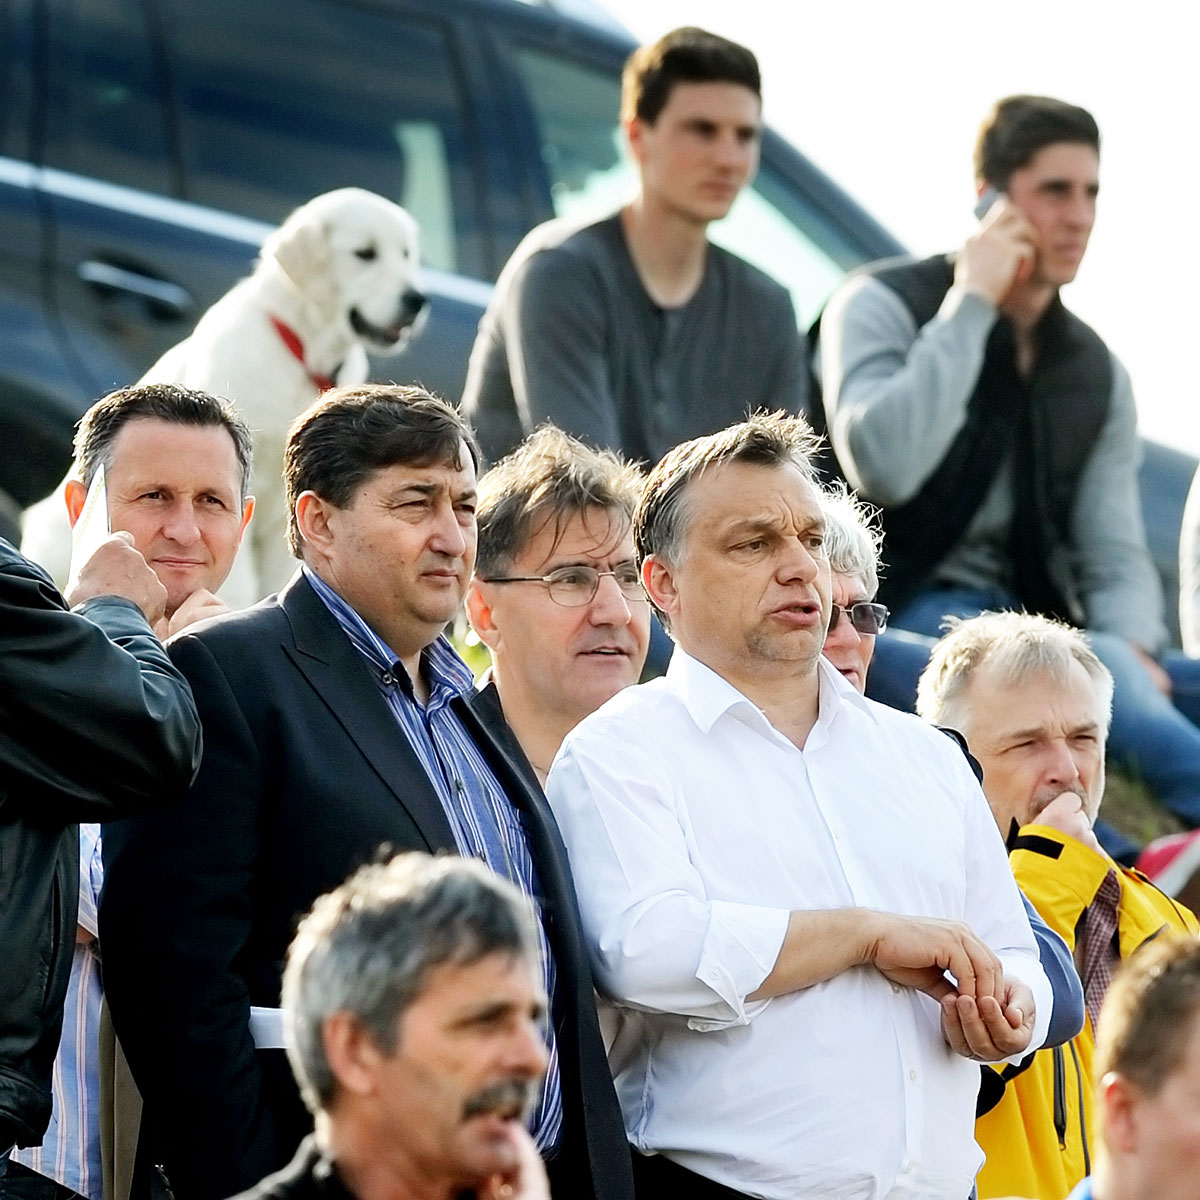 A felcsúti pályán: Orbán Viktor jobbján Mészáros Lőrinc, társaságukban Eperjes Károly és Hernádi Zsolt